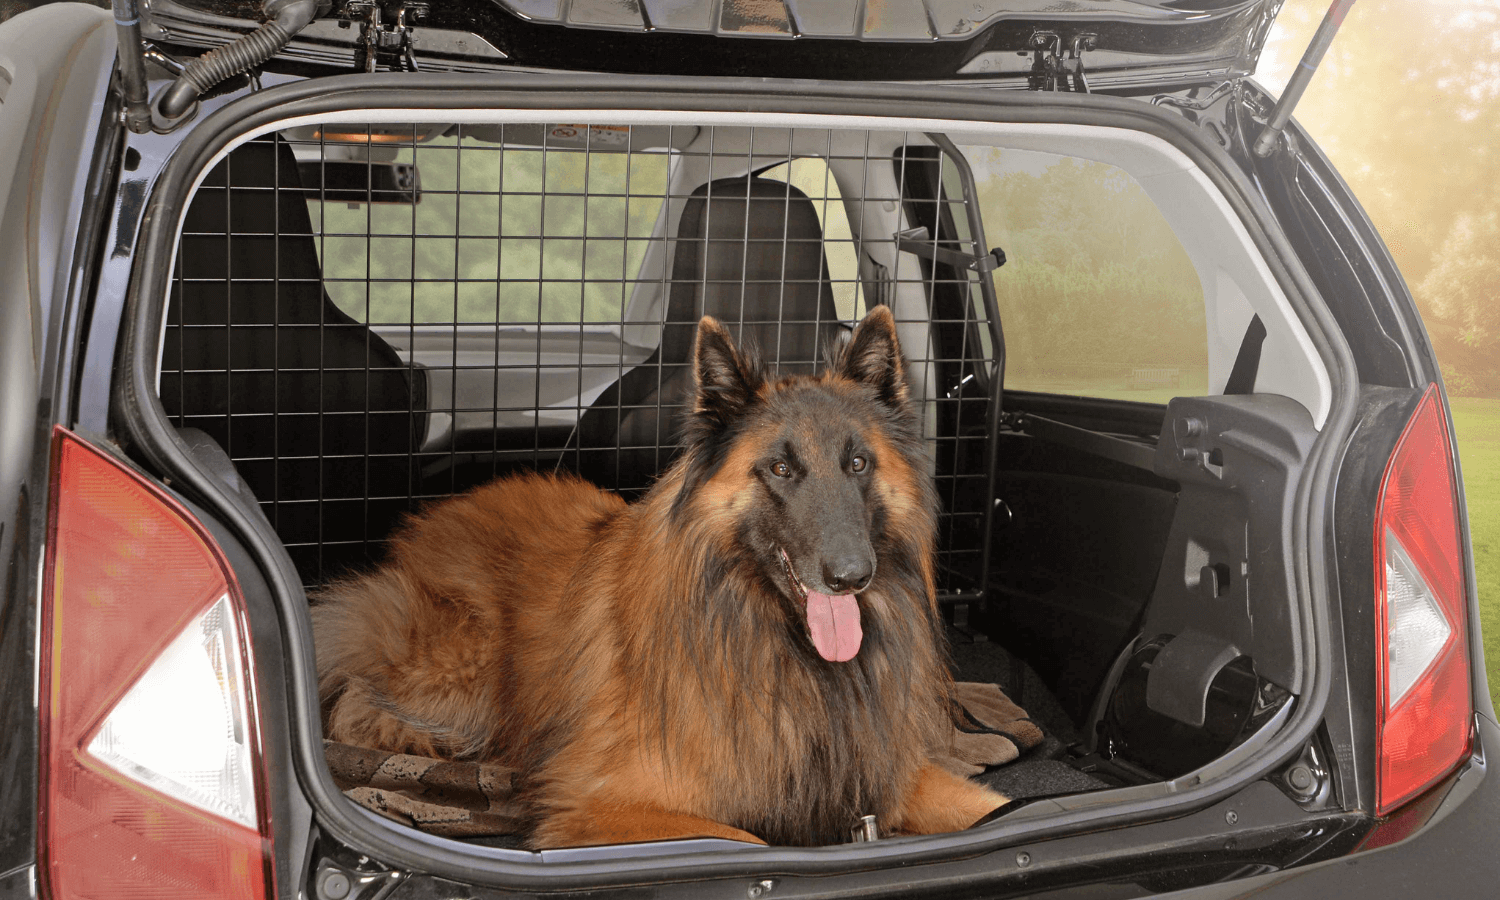 Dogge, Bernhardiner, Rottweiler und Co. einen großen Hund im Auto